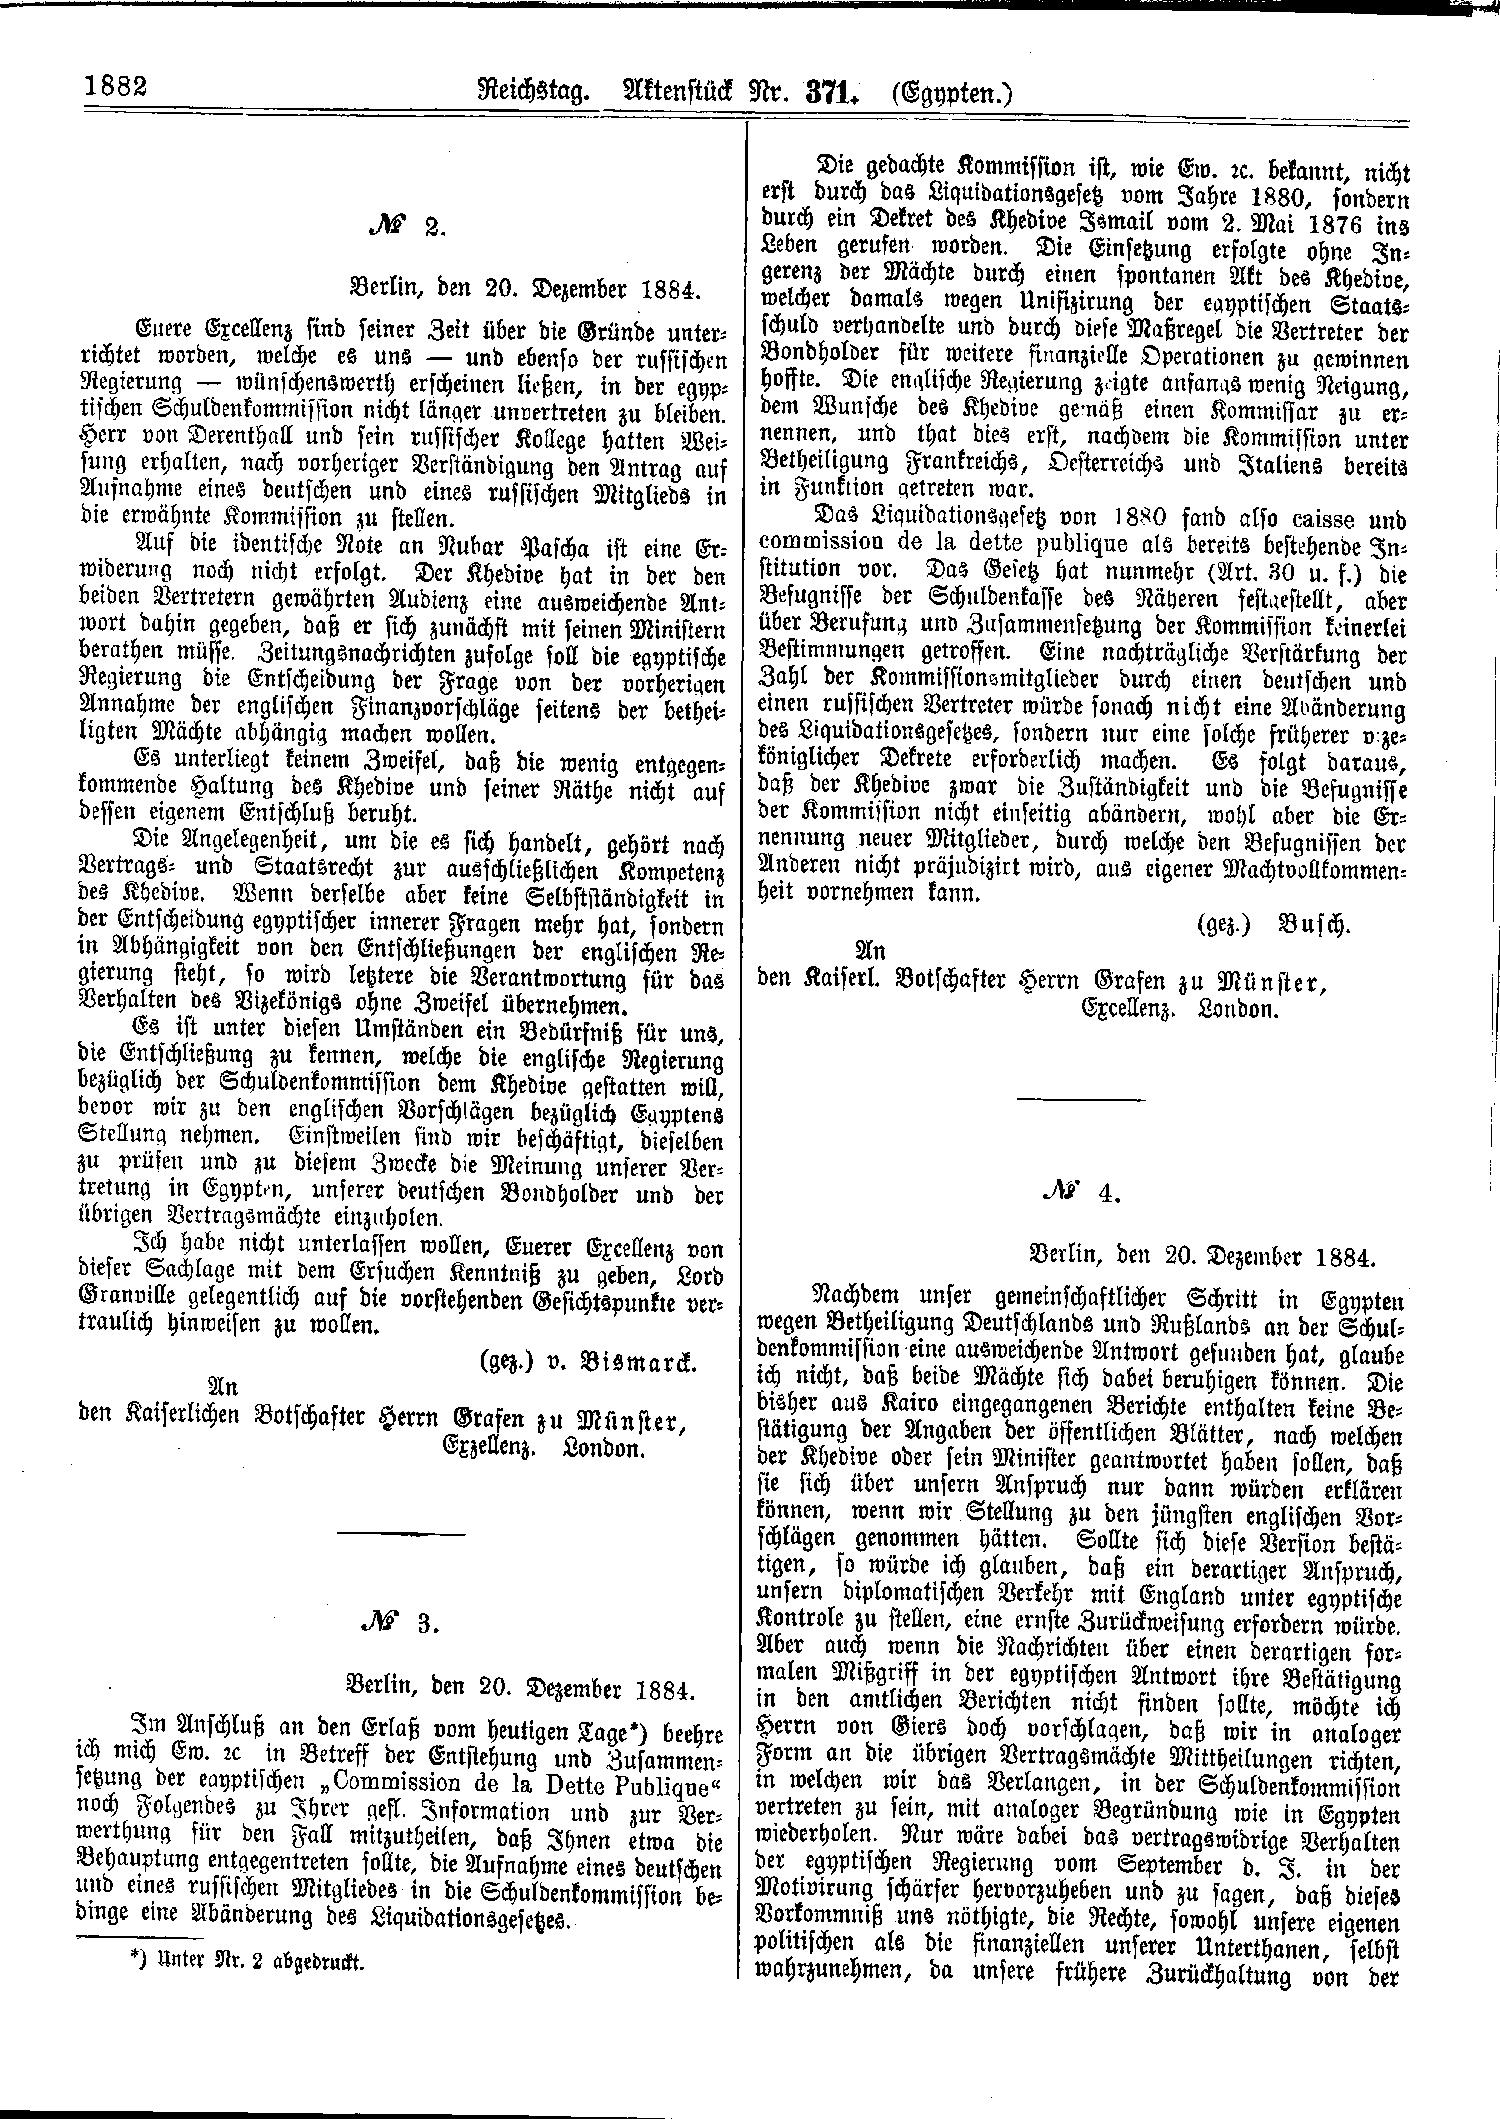 Scan der Seite 1882